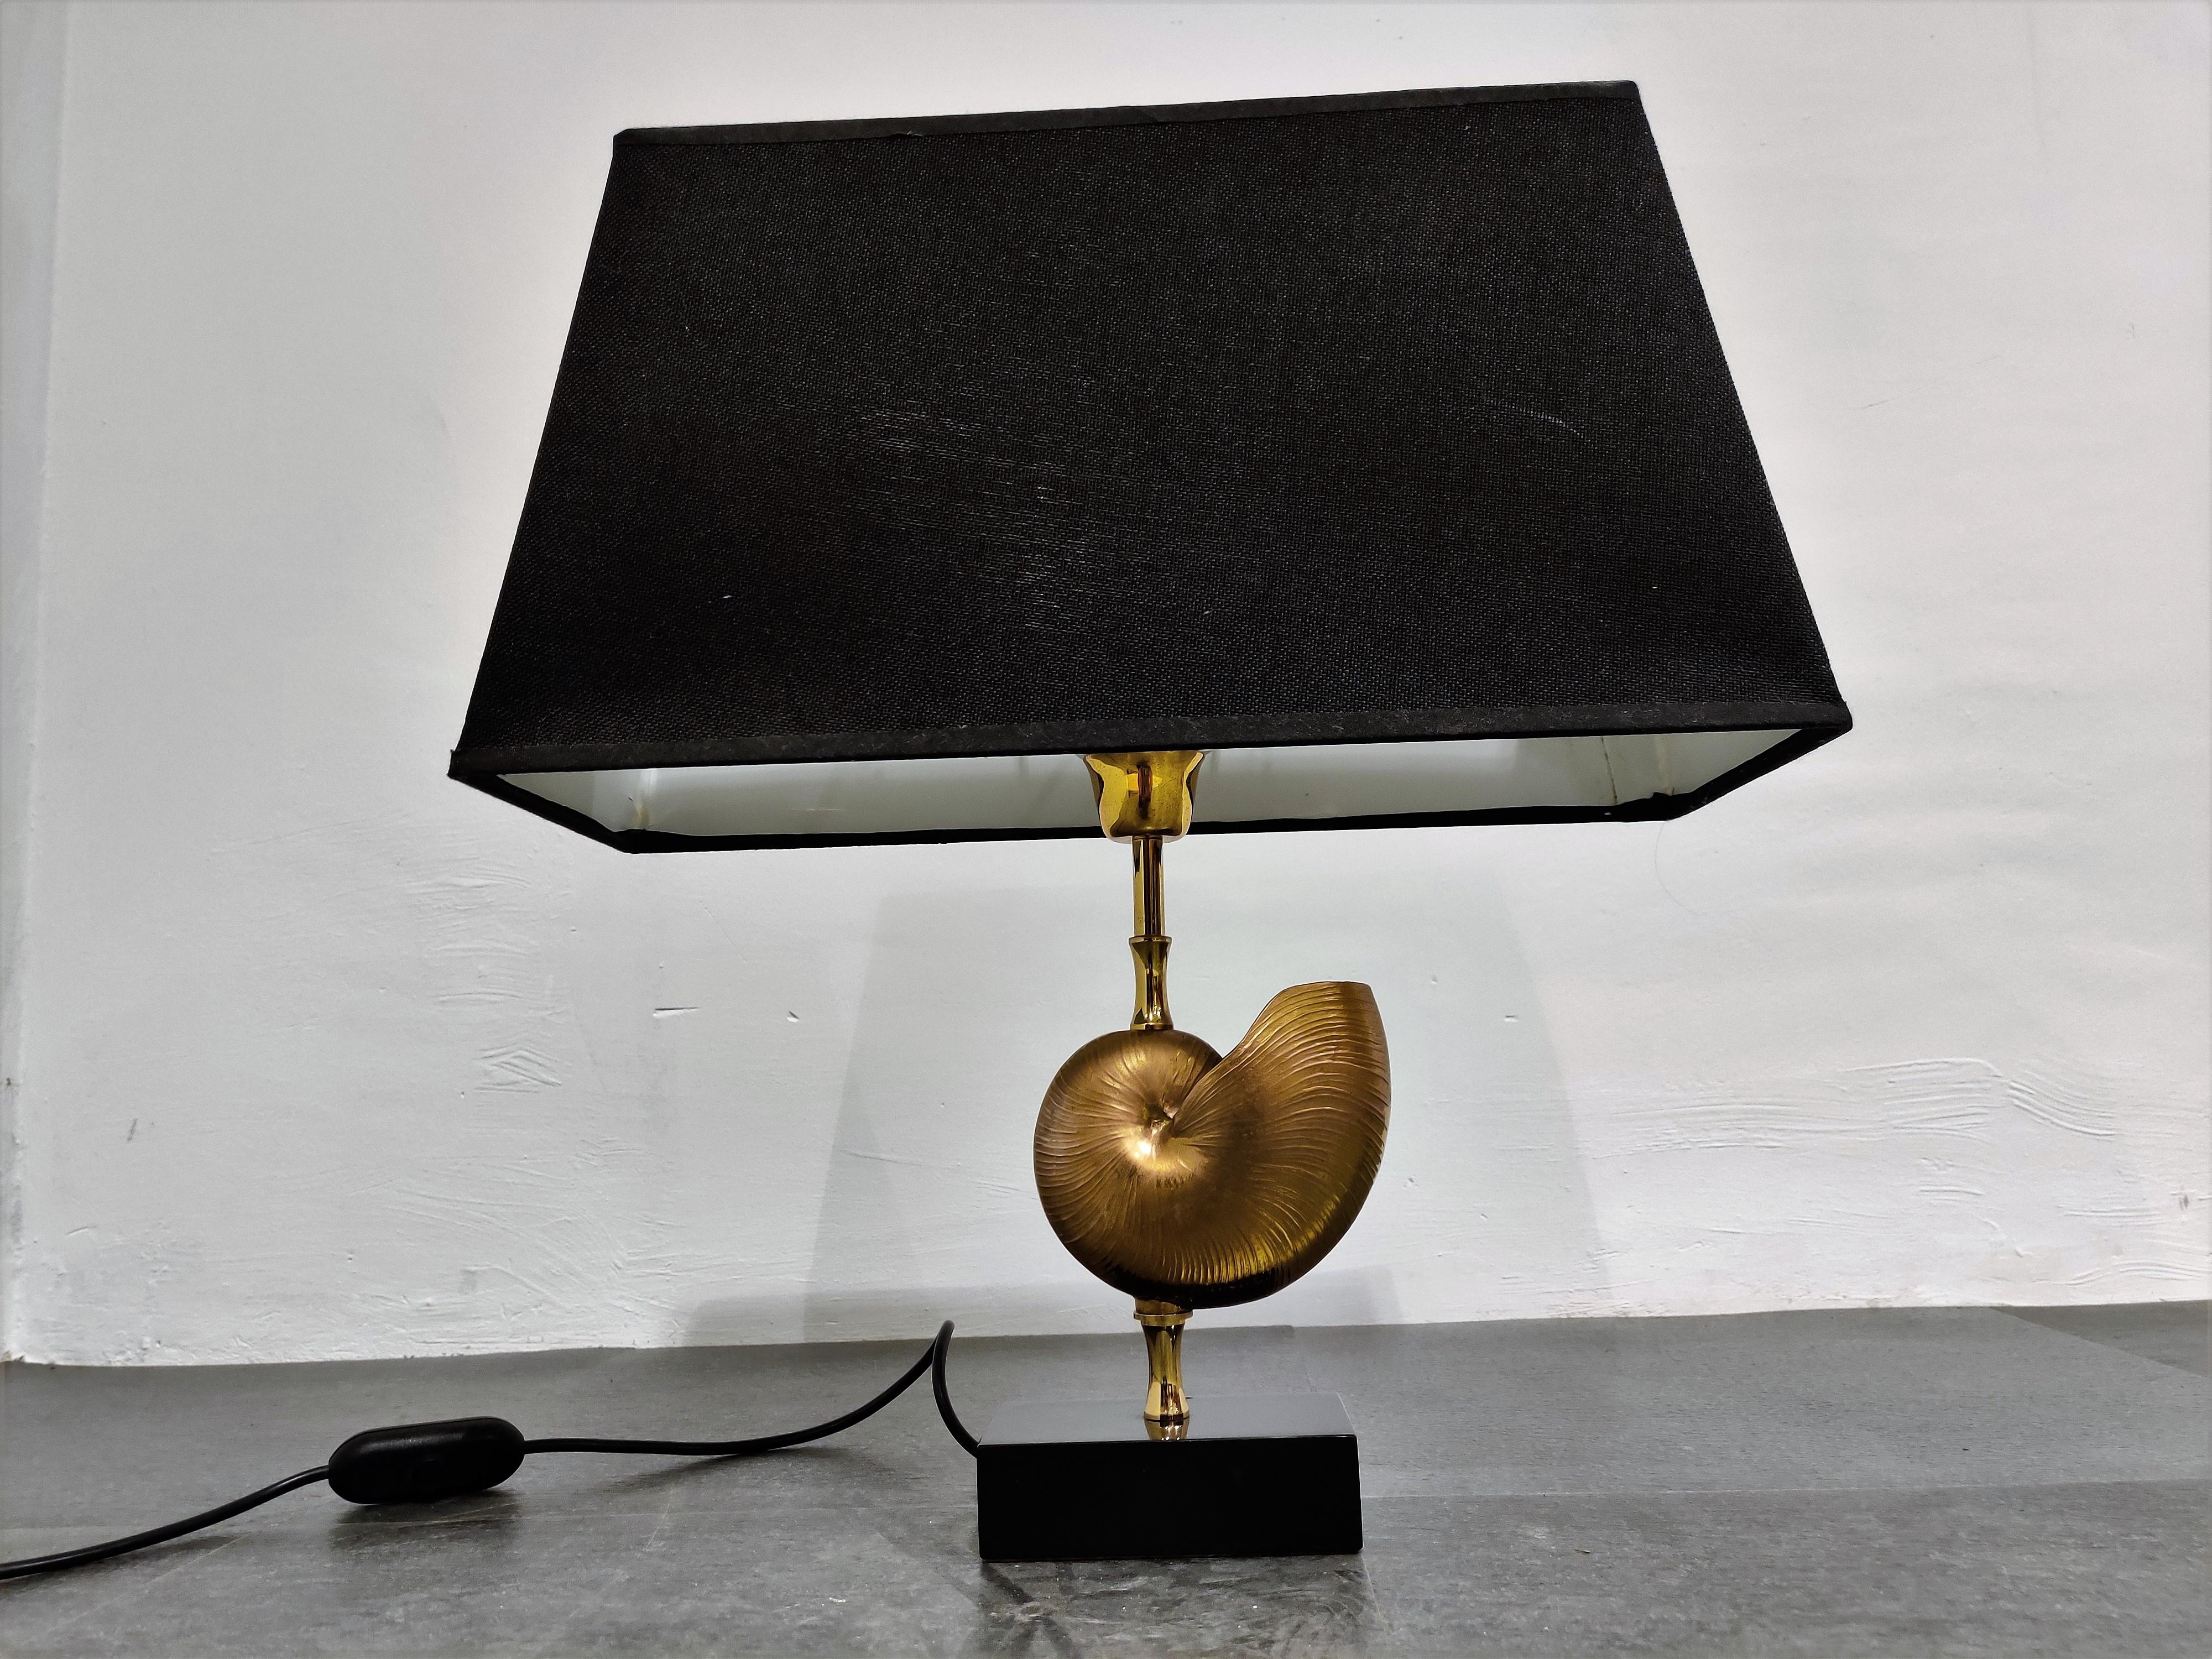 Schöne Nautilusmuschel-Tischlampe aus Messing im Stil von Maison Charles.

Diese luxuriöse Lampe hat eine goldene Nautilusmuschel in der Mitte.

Guter Zustand.

Die Lampe funktioniert mit einer Standard-E27-Glühbirne und ist für den sicheren